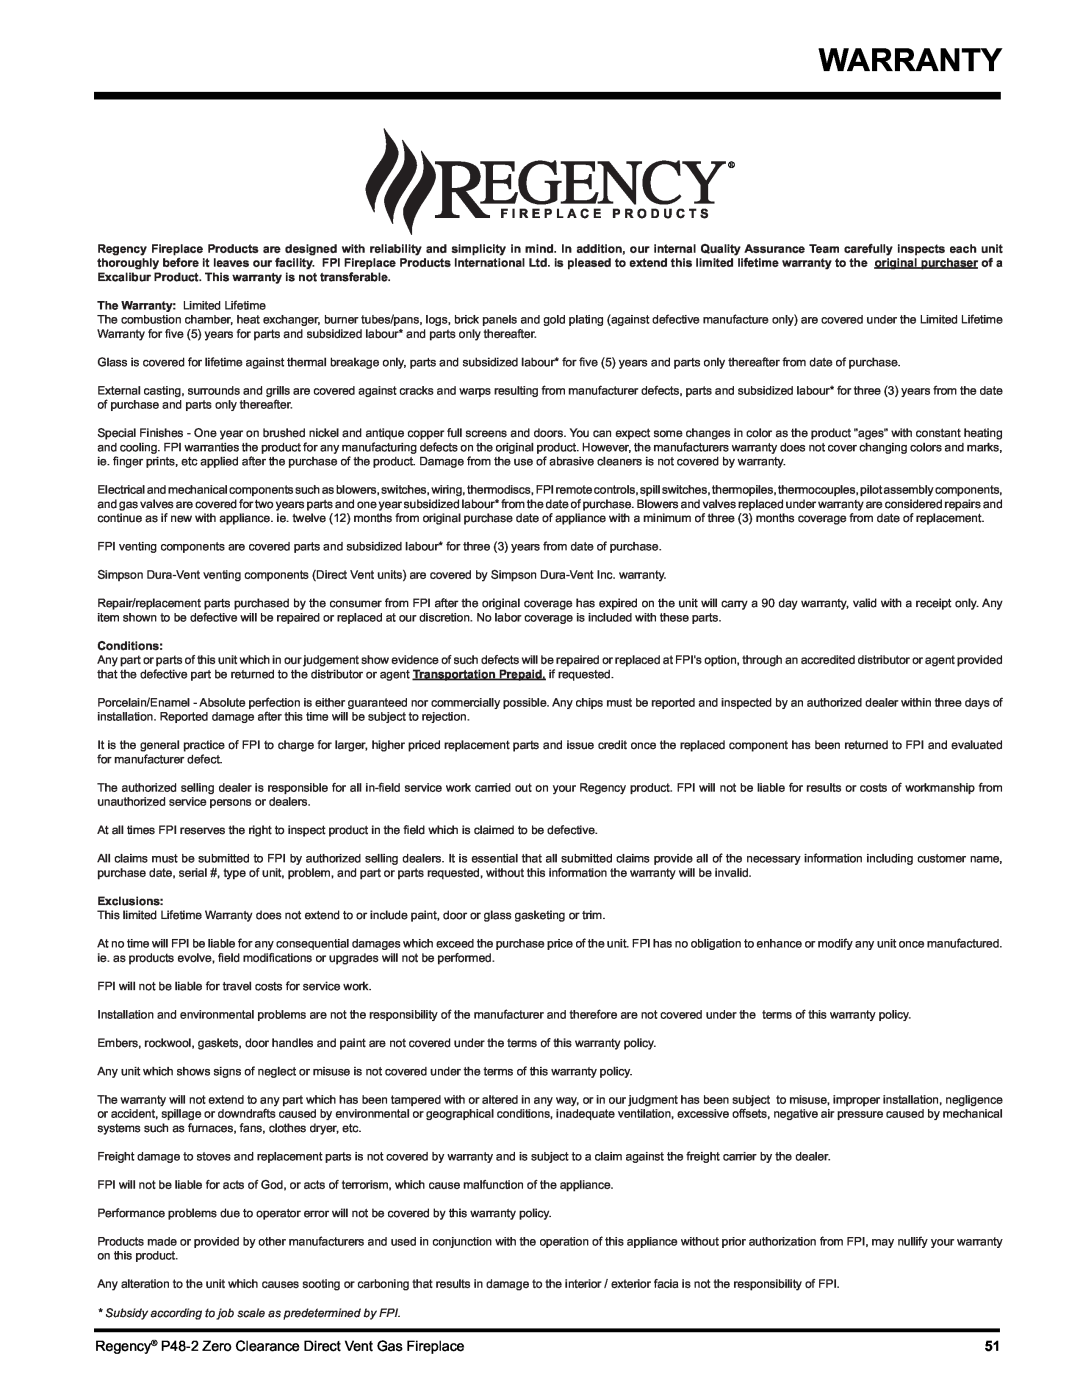 Regency P48-2 installation manual Warranty, Conditions, Exclusions 